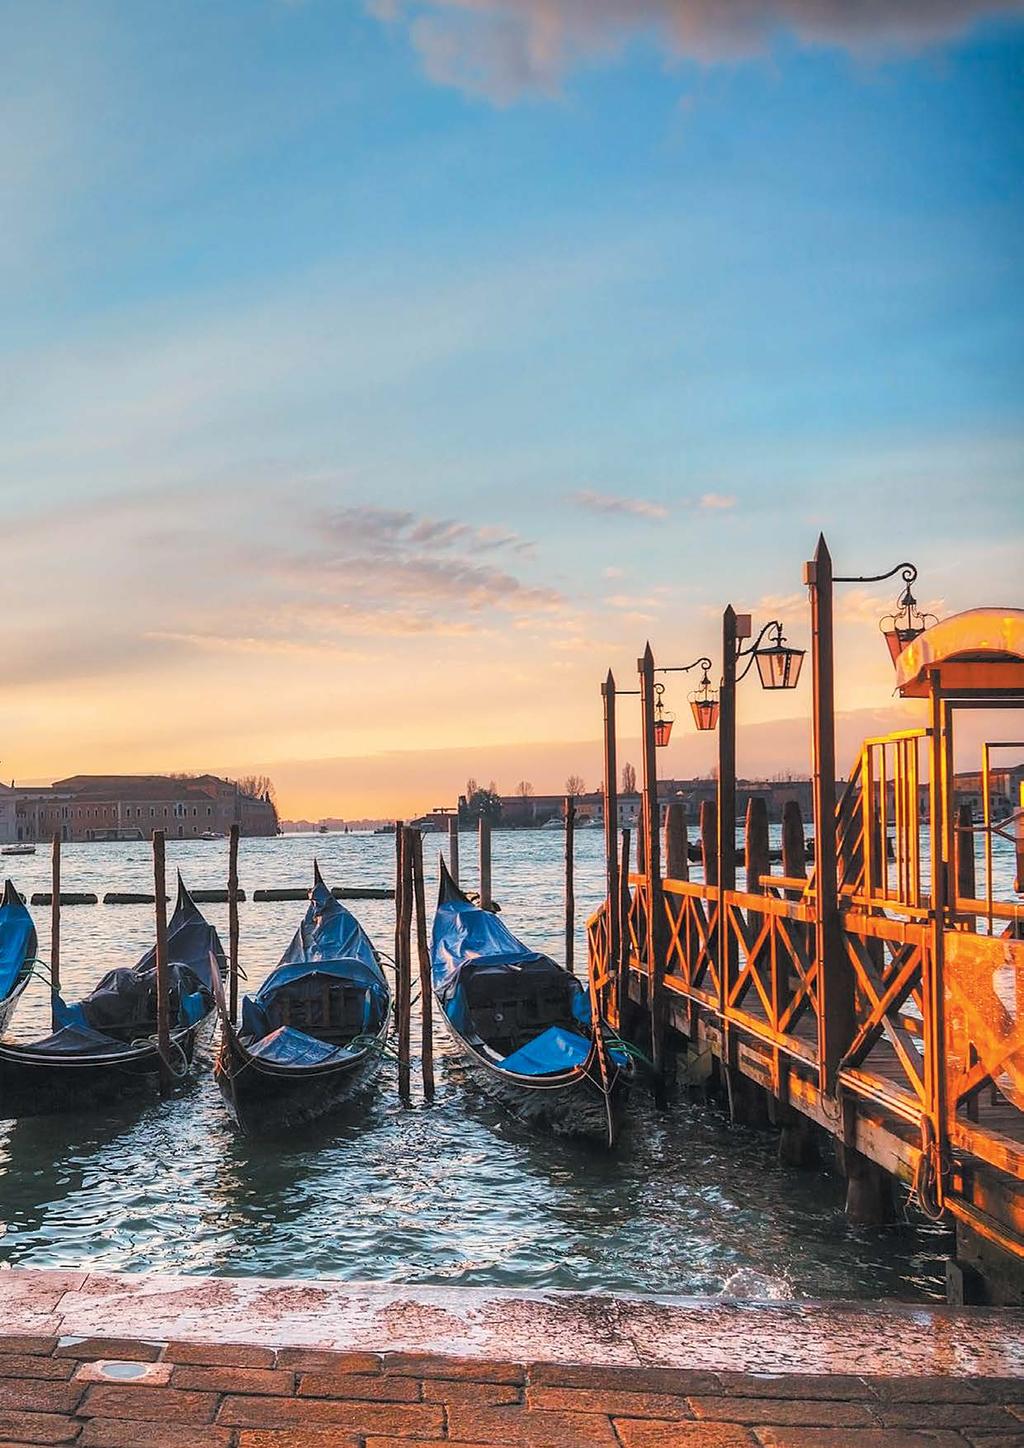 Exklusiv 2016 Venedig & seine Lagune Fahrt nach Venedig. Canale Grande, Rialtobrücke, San Marco und die lagune. Man muss die Stadt mit den Füssen hören- und mit dem Herzen!